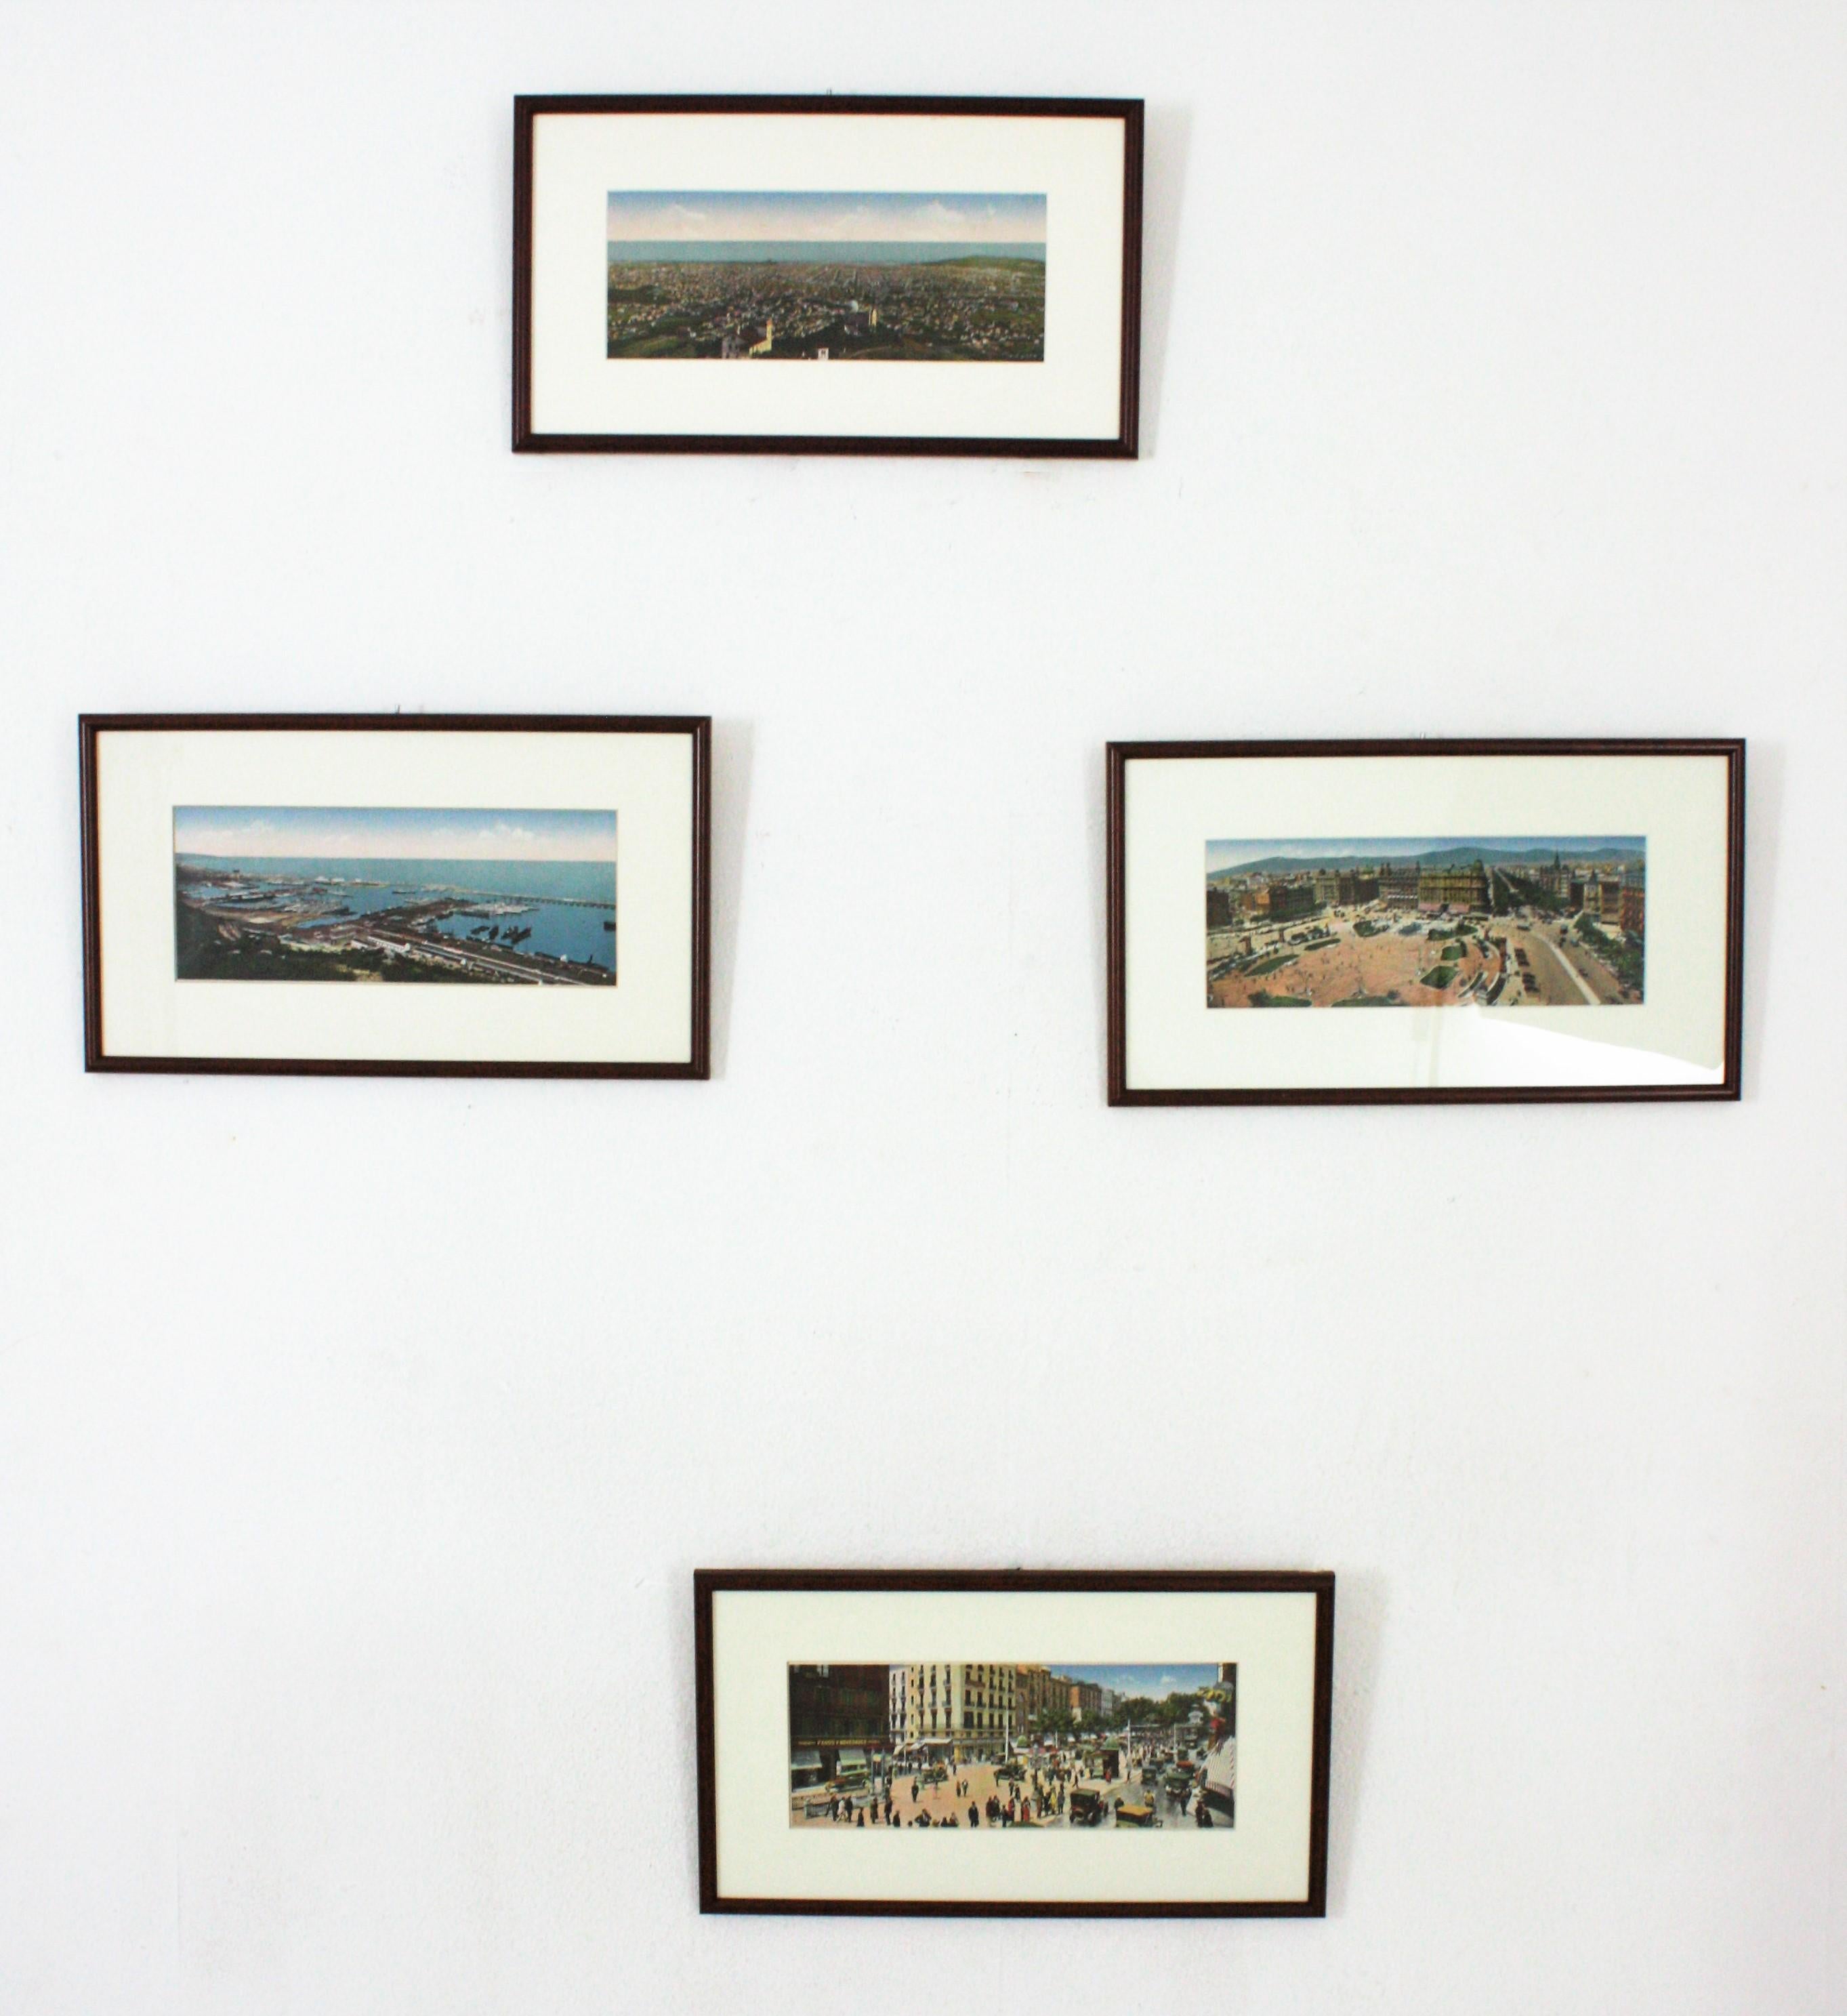 Set of four original prints of Barcelona city views, framed. Spain, 1930s
Barcelona views:
